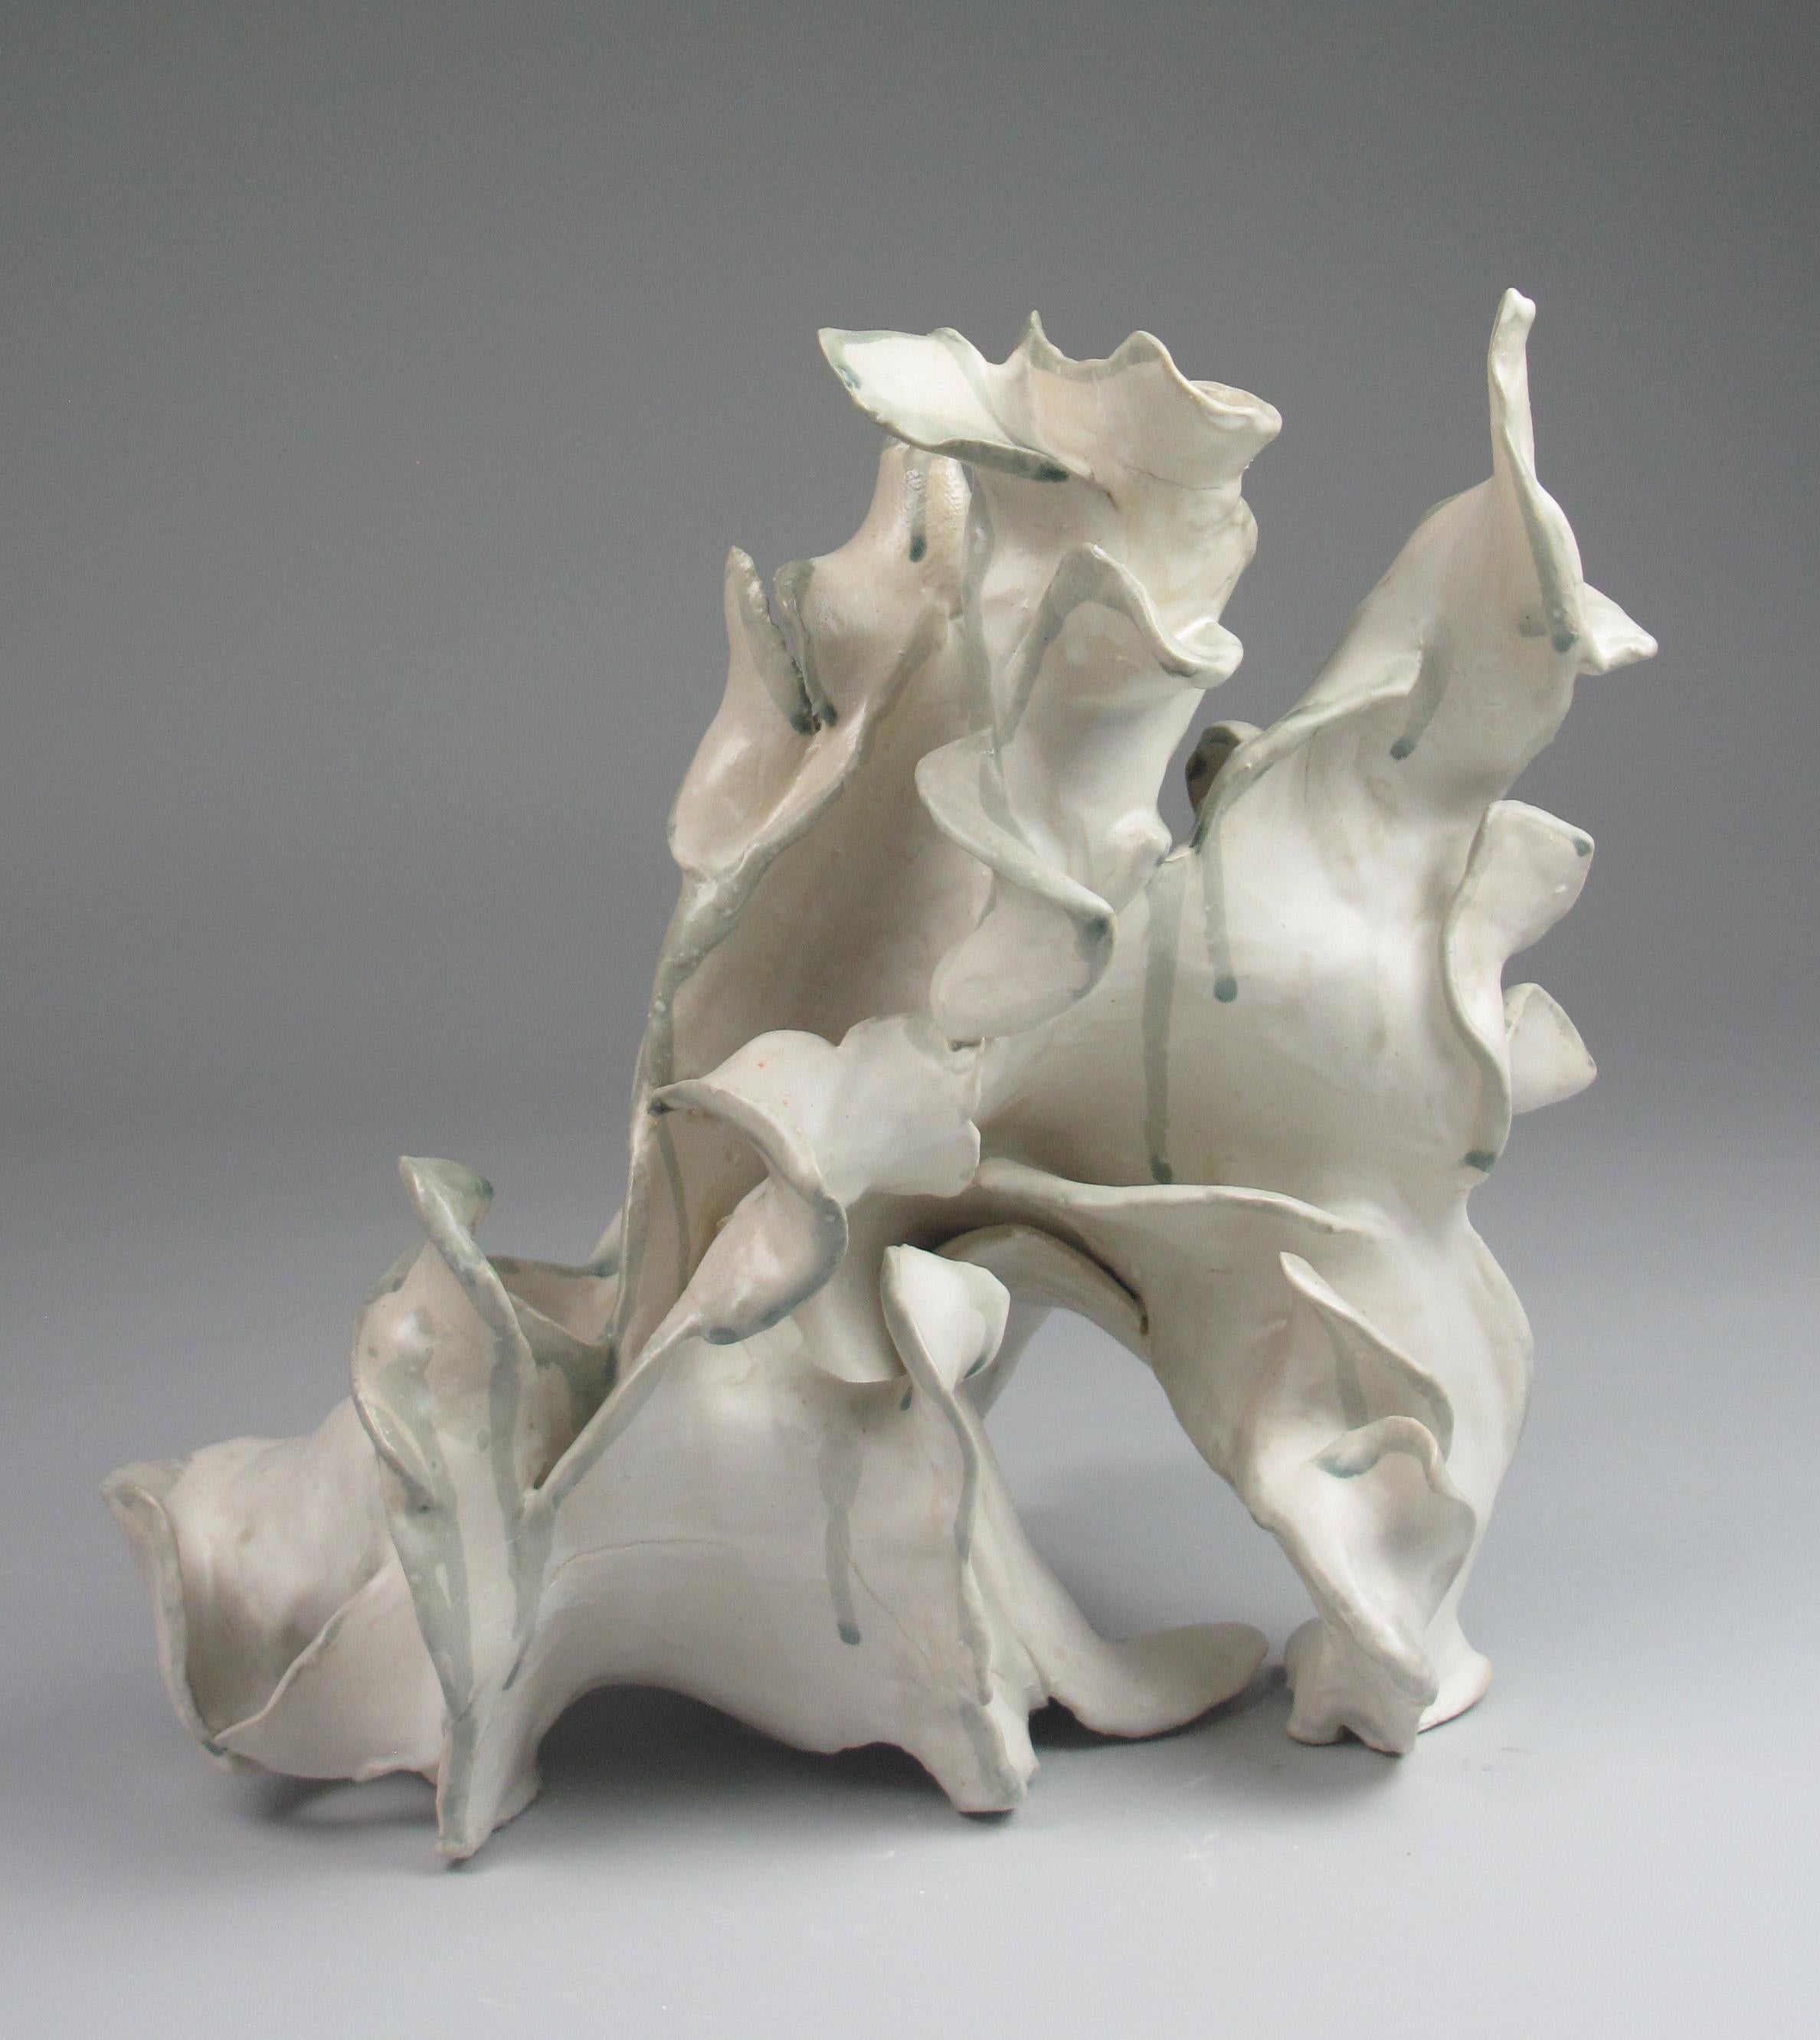 "Bloom", gestural, ceramic, white, cream, grey, teal, stoneware, sculpture